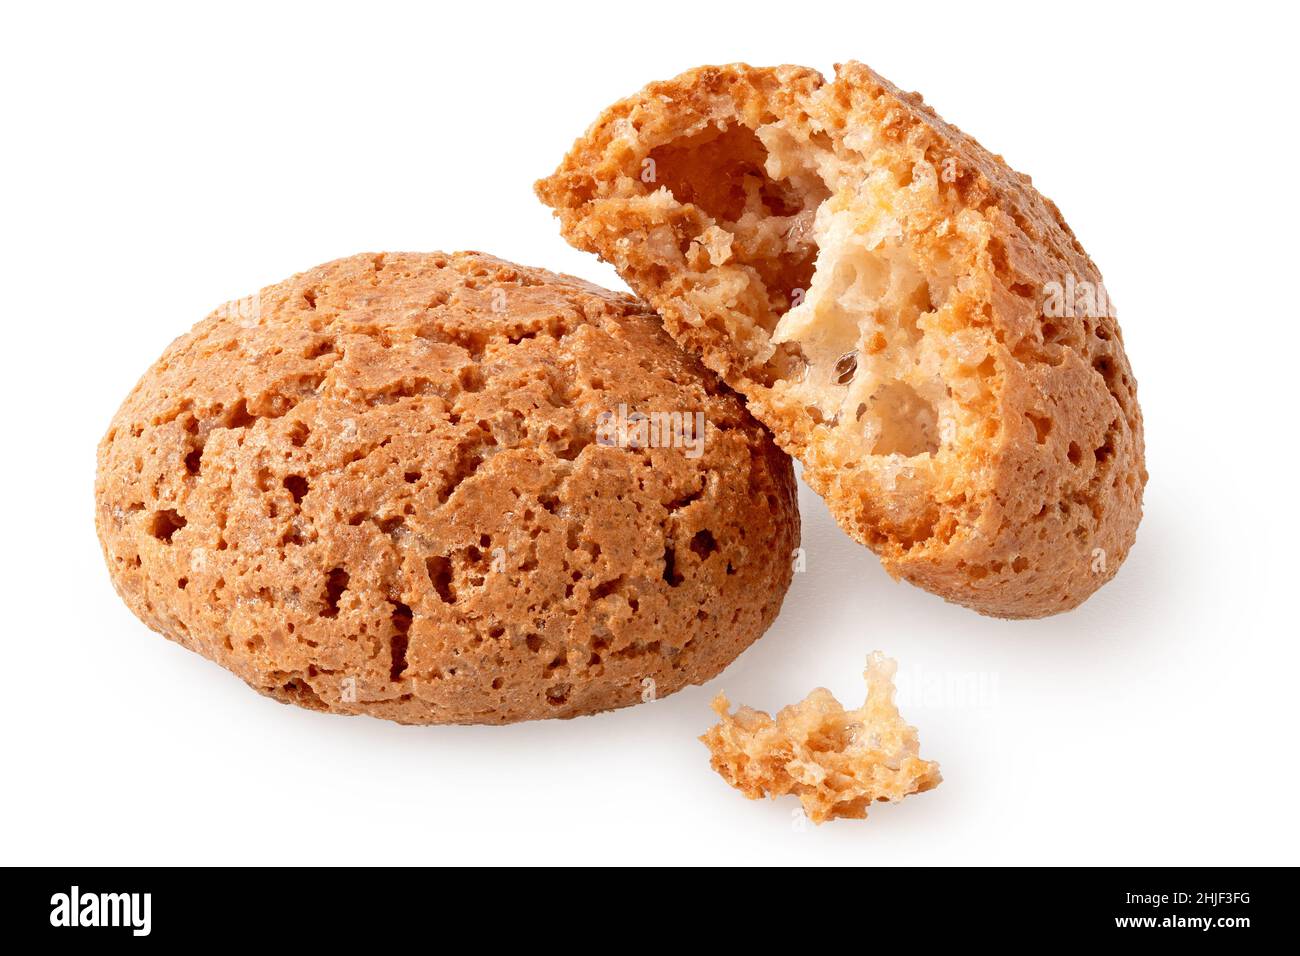 Un biscuits amaretti entier et un biscuits cassés isolés sur du blanc. Banque D'Images